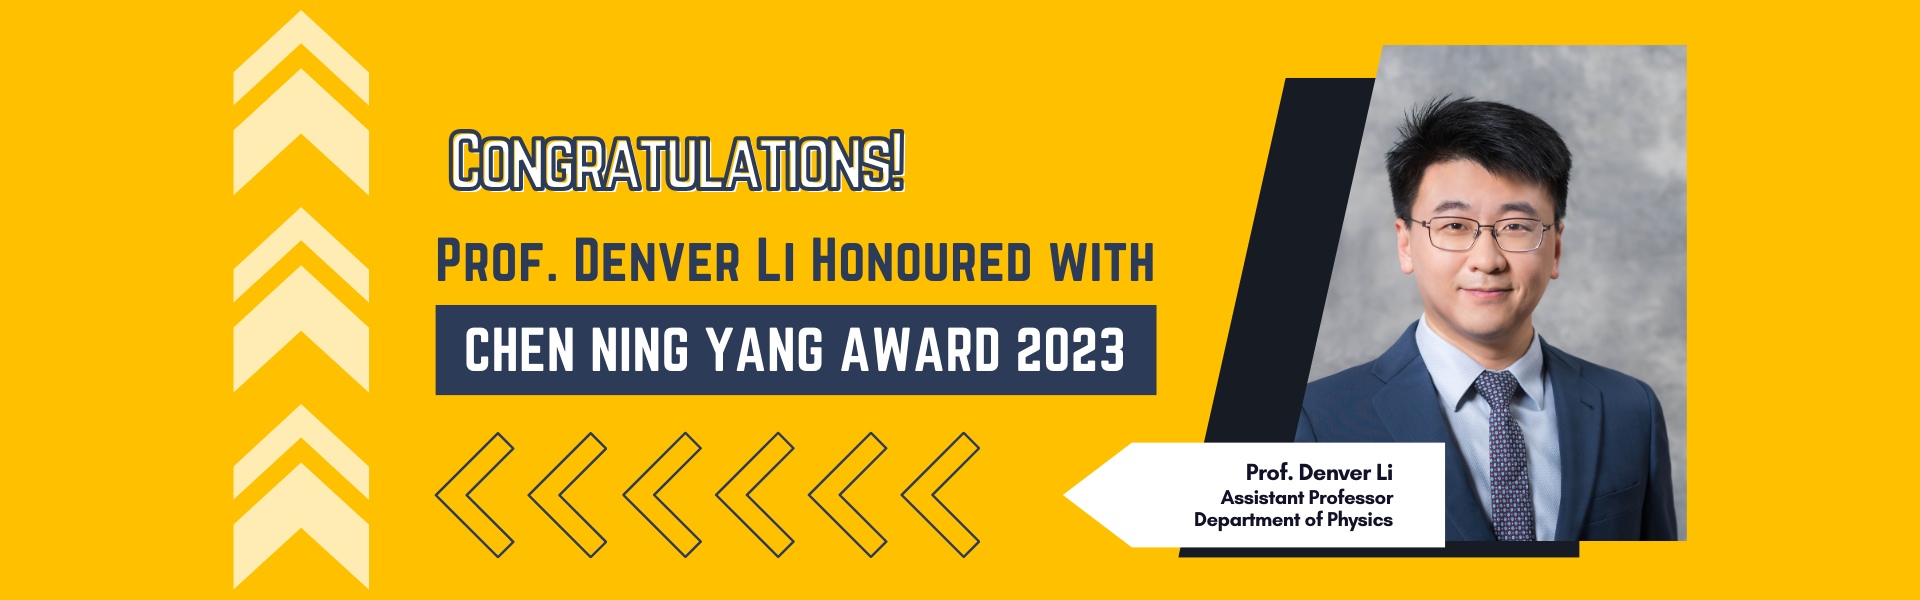 Chen Ning Yang Award 2023